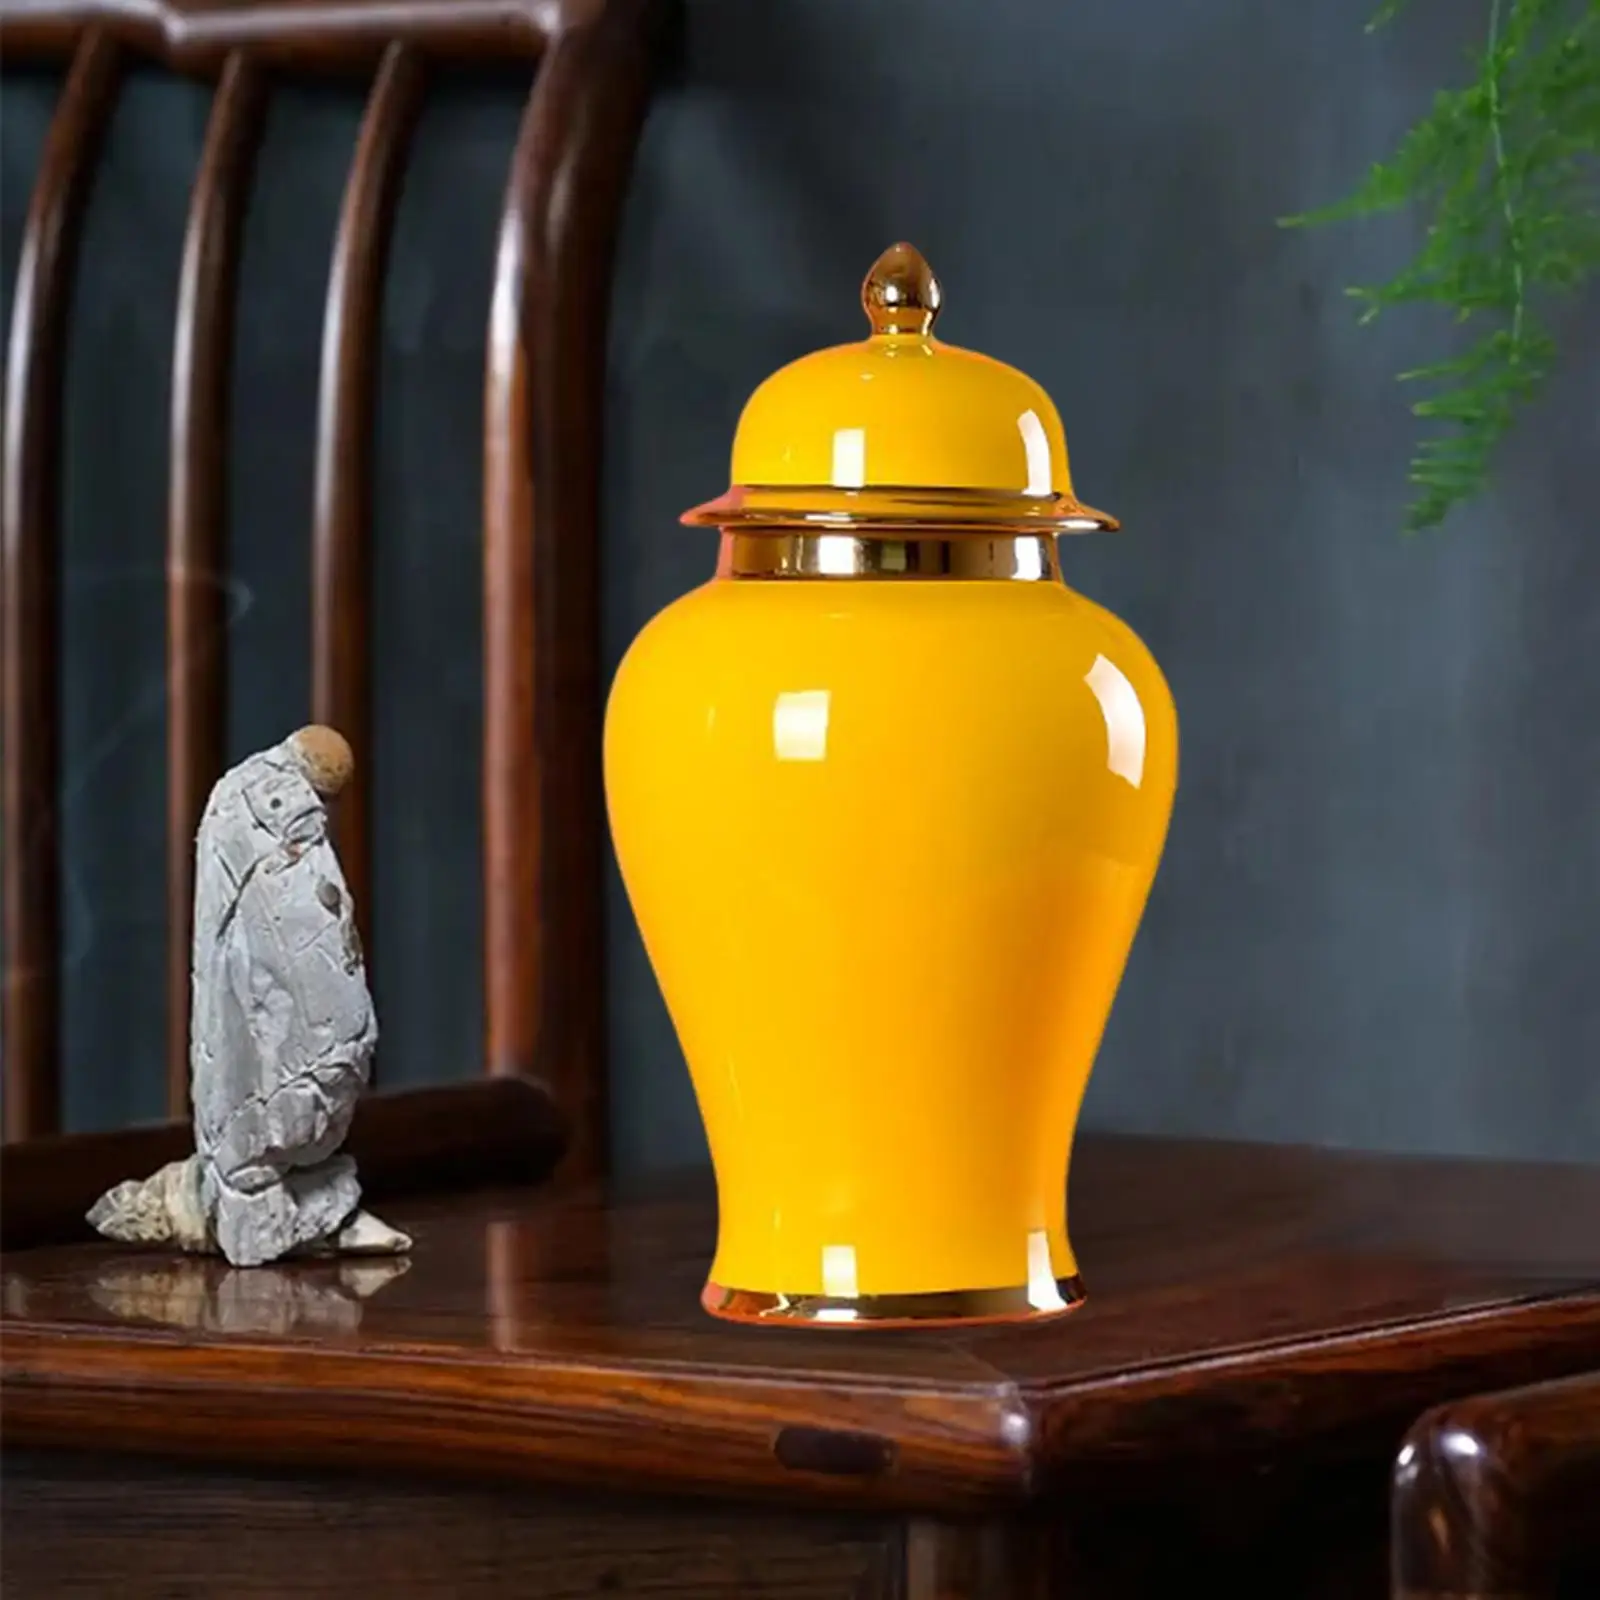 Statues Ceramic Vase Storage Organizer Porcelain Ginger Jar for Living Room